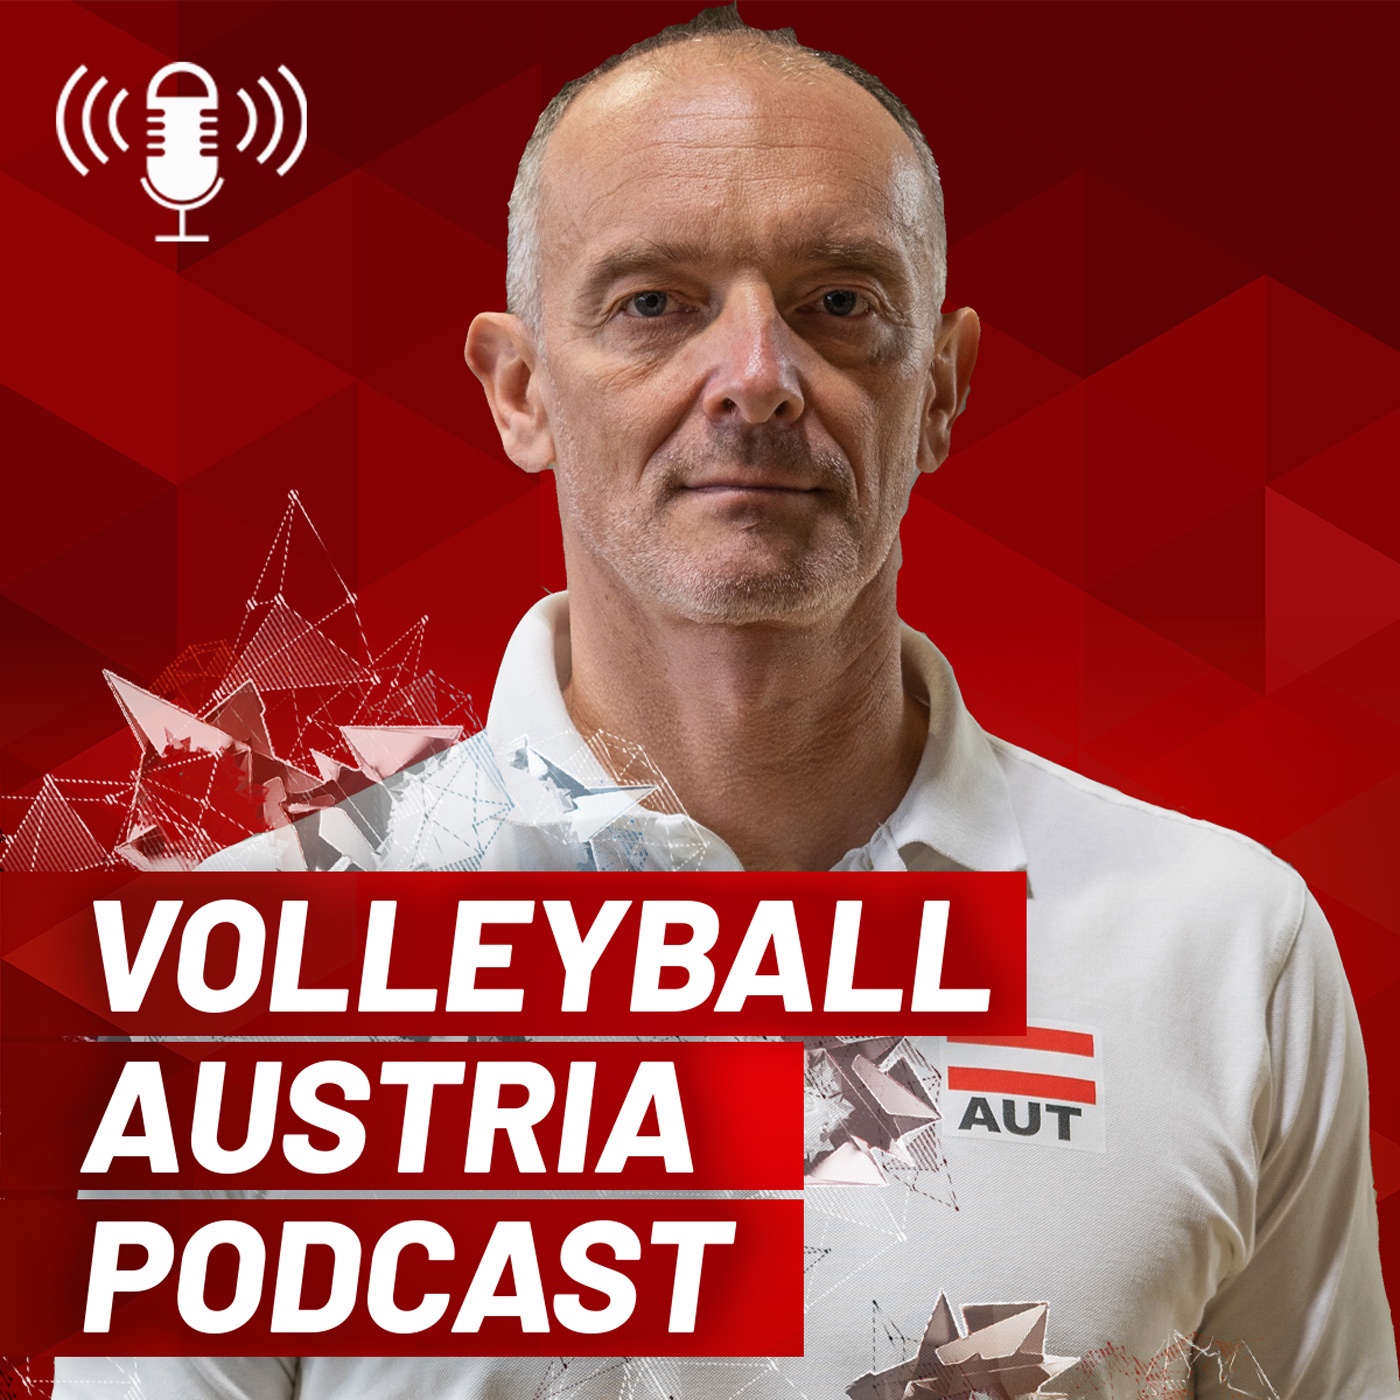 ÖVV Beach Volleyball Herren-Cheftrainer Martin Olejnak im Gespräch